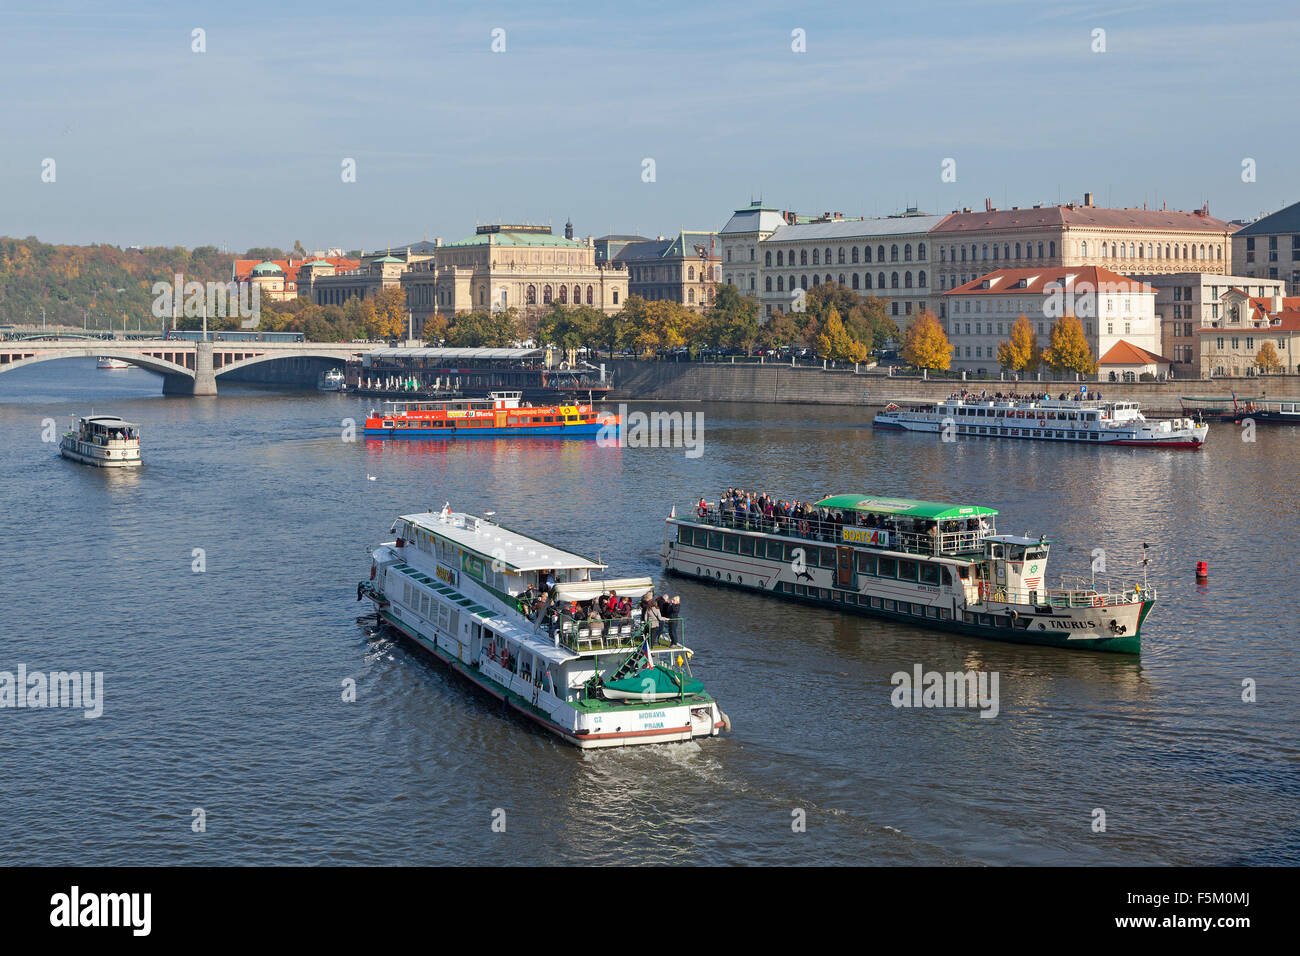 excursion boats, Manes Bridge, River Vltava, Prague, Czech Republic Stock Photo